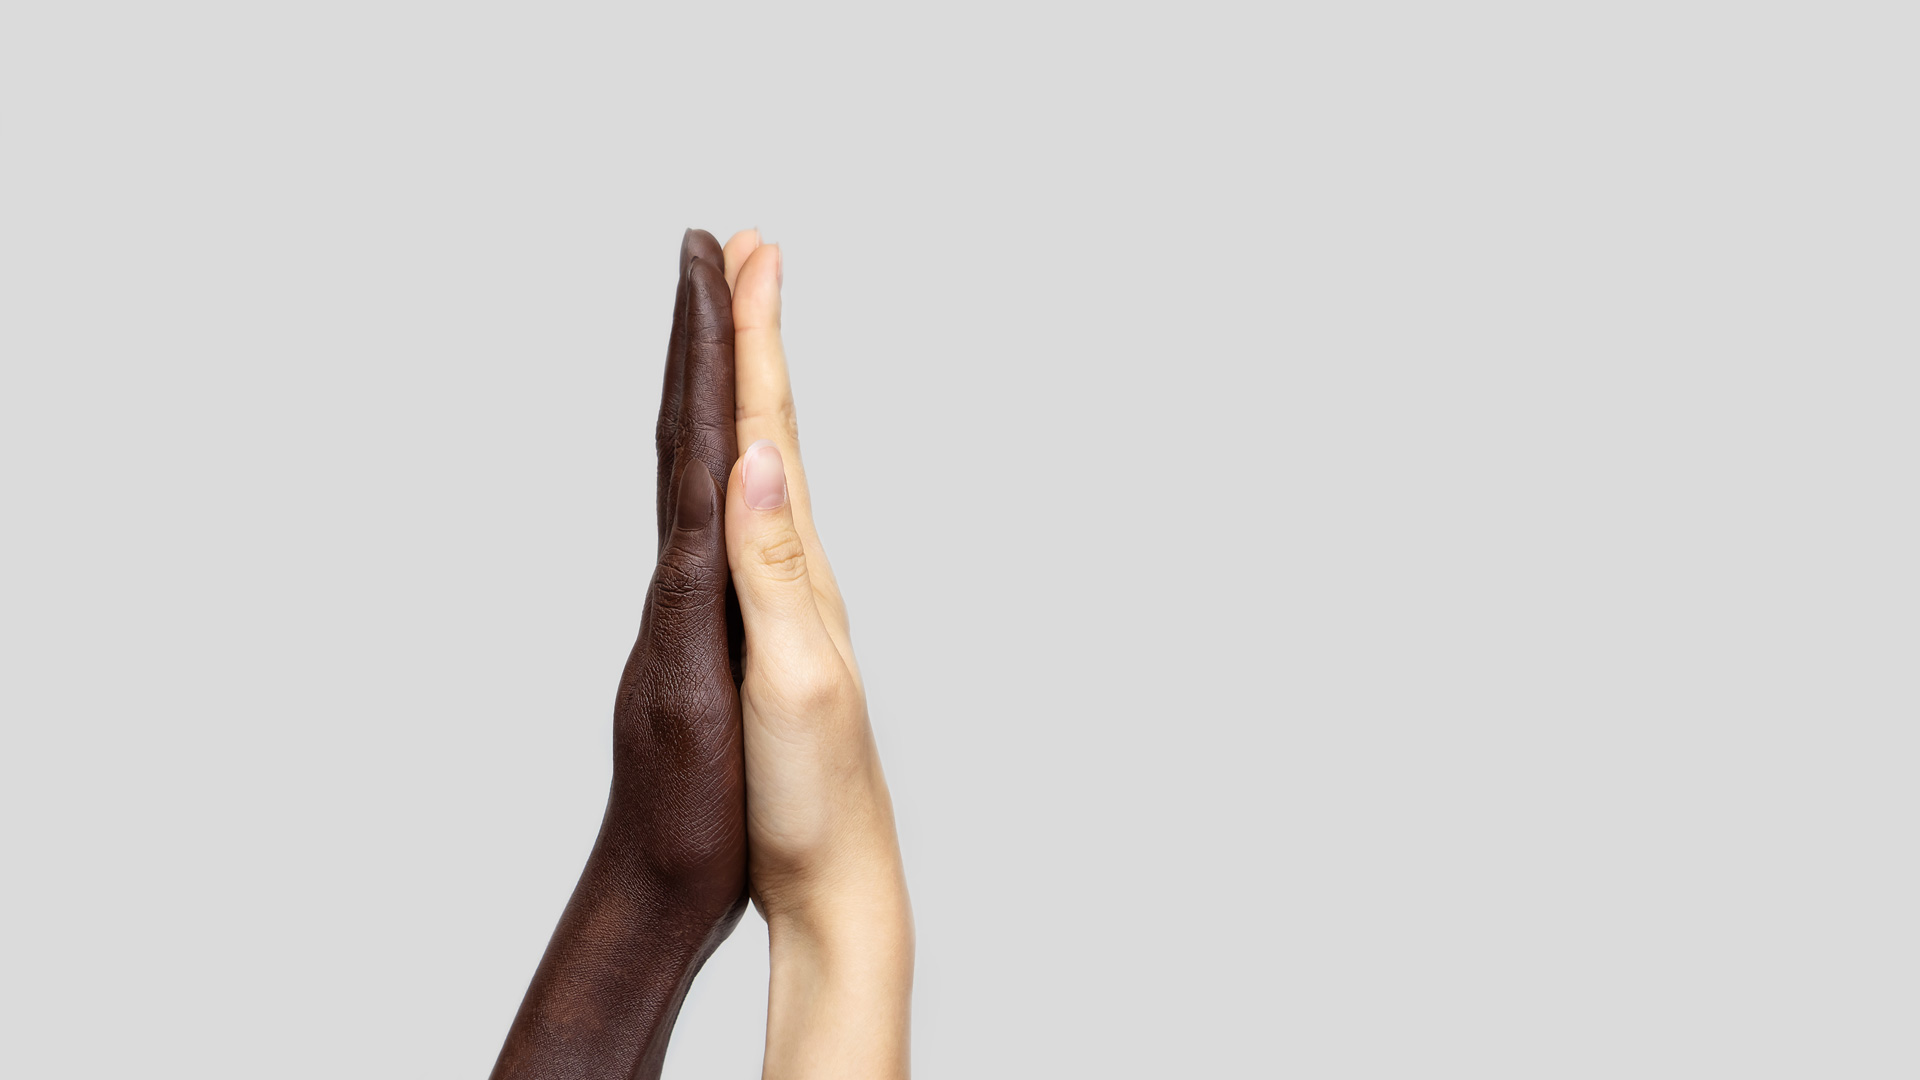 Mãos negra e branca unidas pelas palmas (Foto: Natalia Riabchenko/Shutterstock)